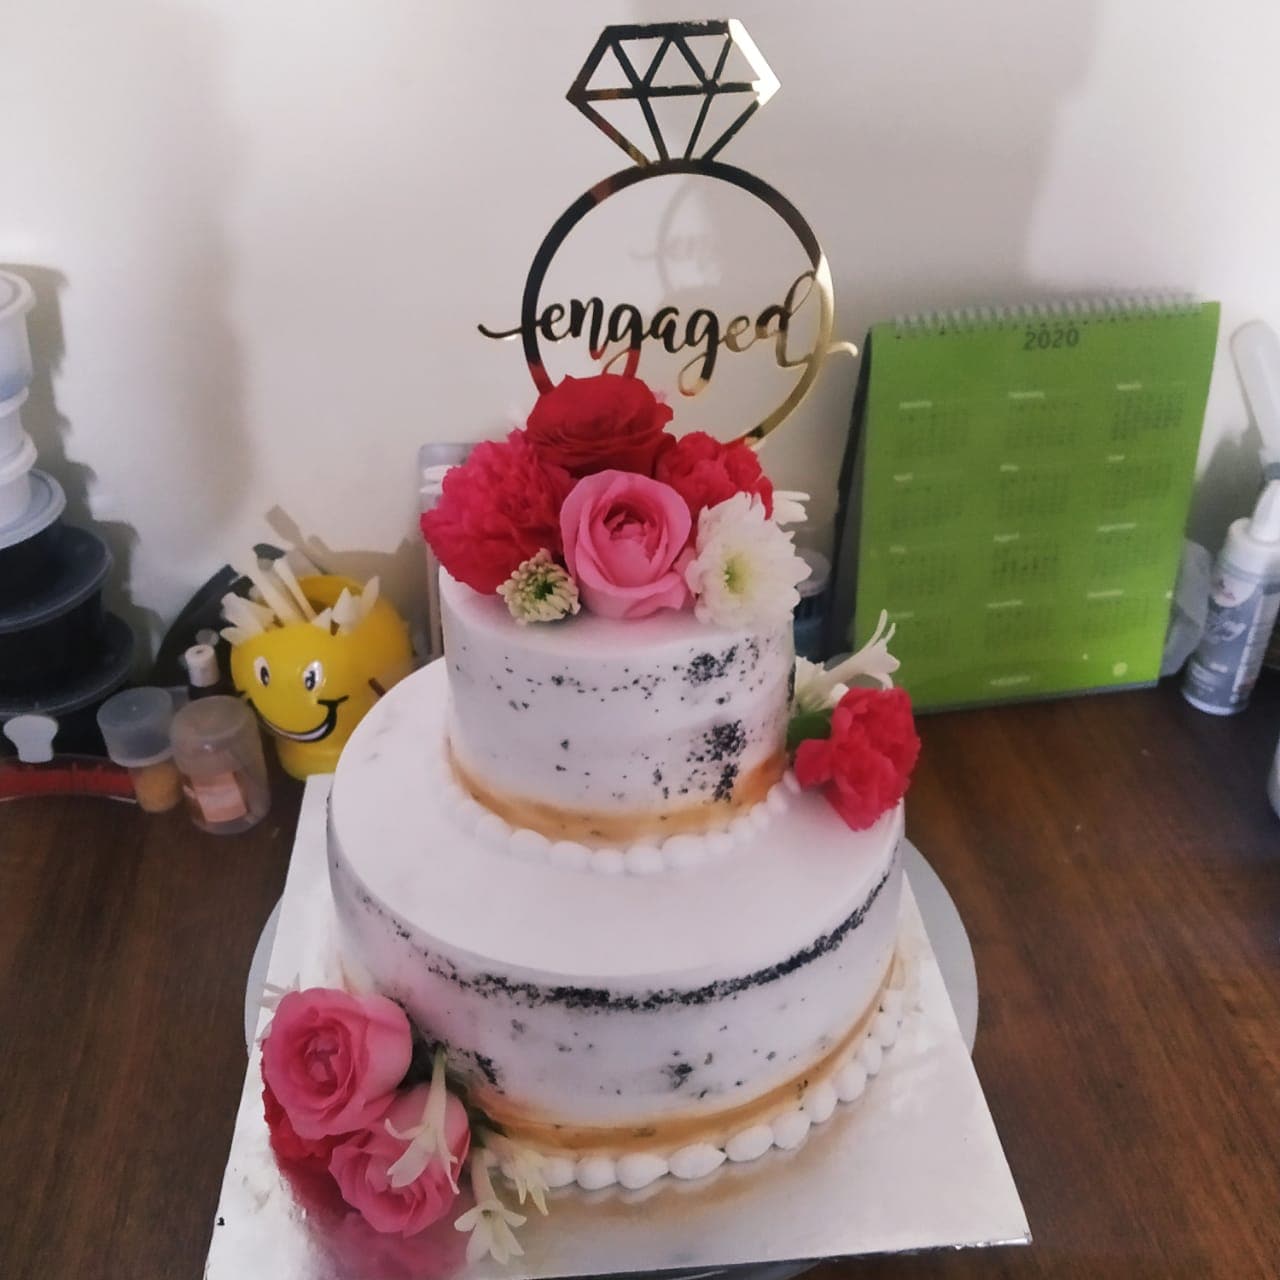 Engagement Cake ideas || Stylish Engagement Cake Decorations for Couples || Ring  cake Designs - YouTube